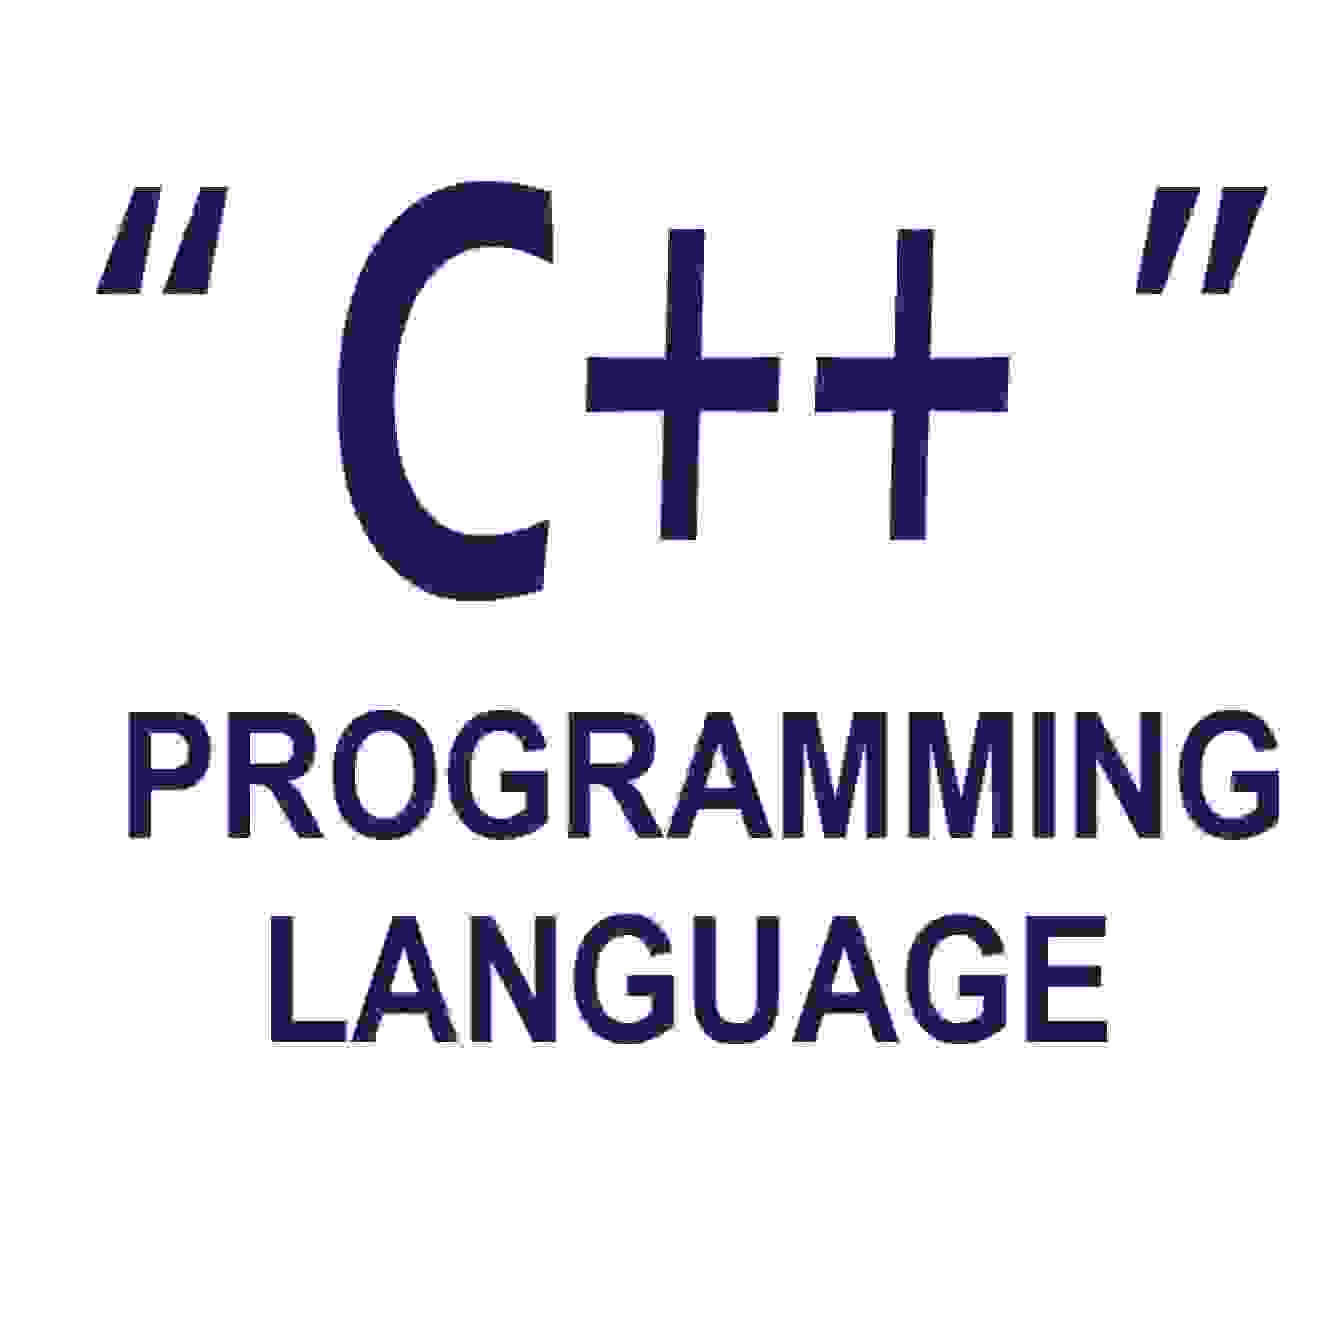 Prgramming Lang - C++